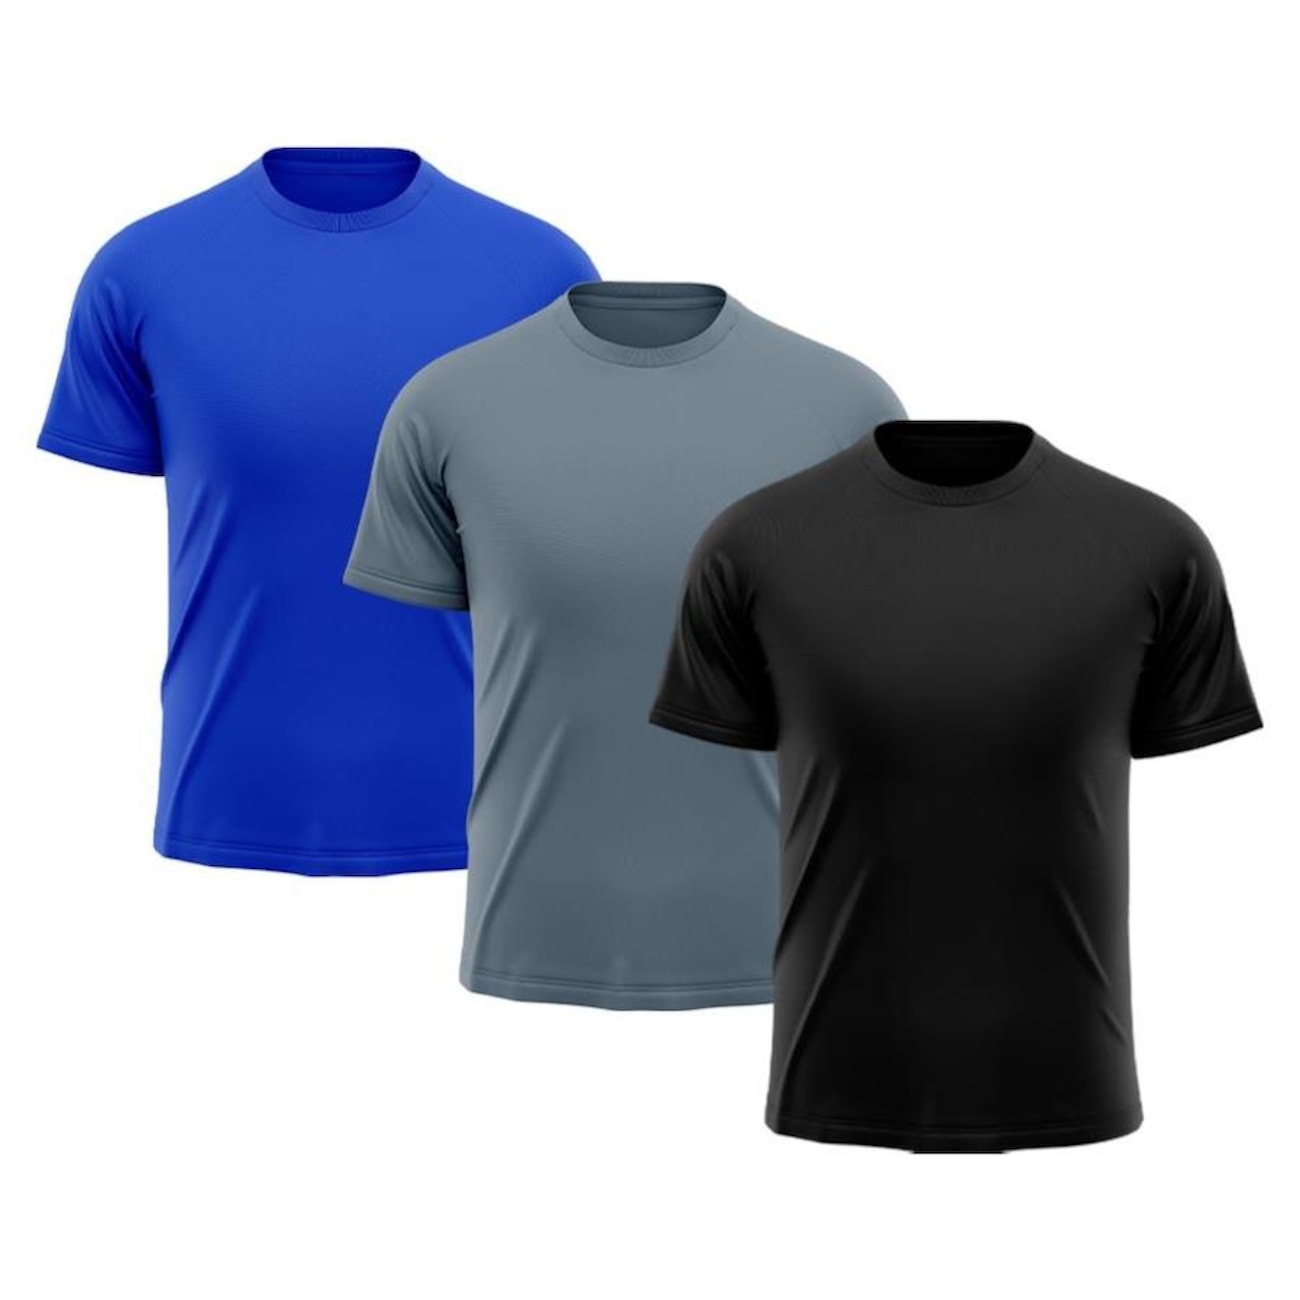 Camiseta Whats Wear Raglan Dry Fit com Proteção Solar UV - Masculina - 3 Unds